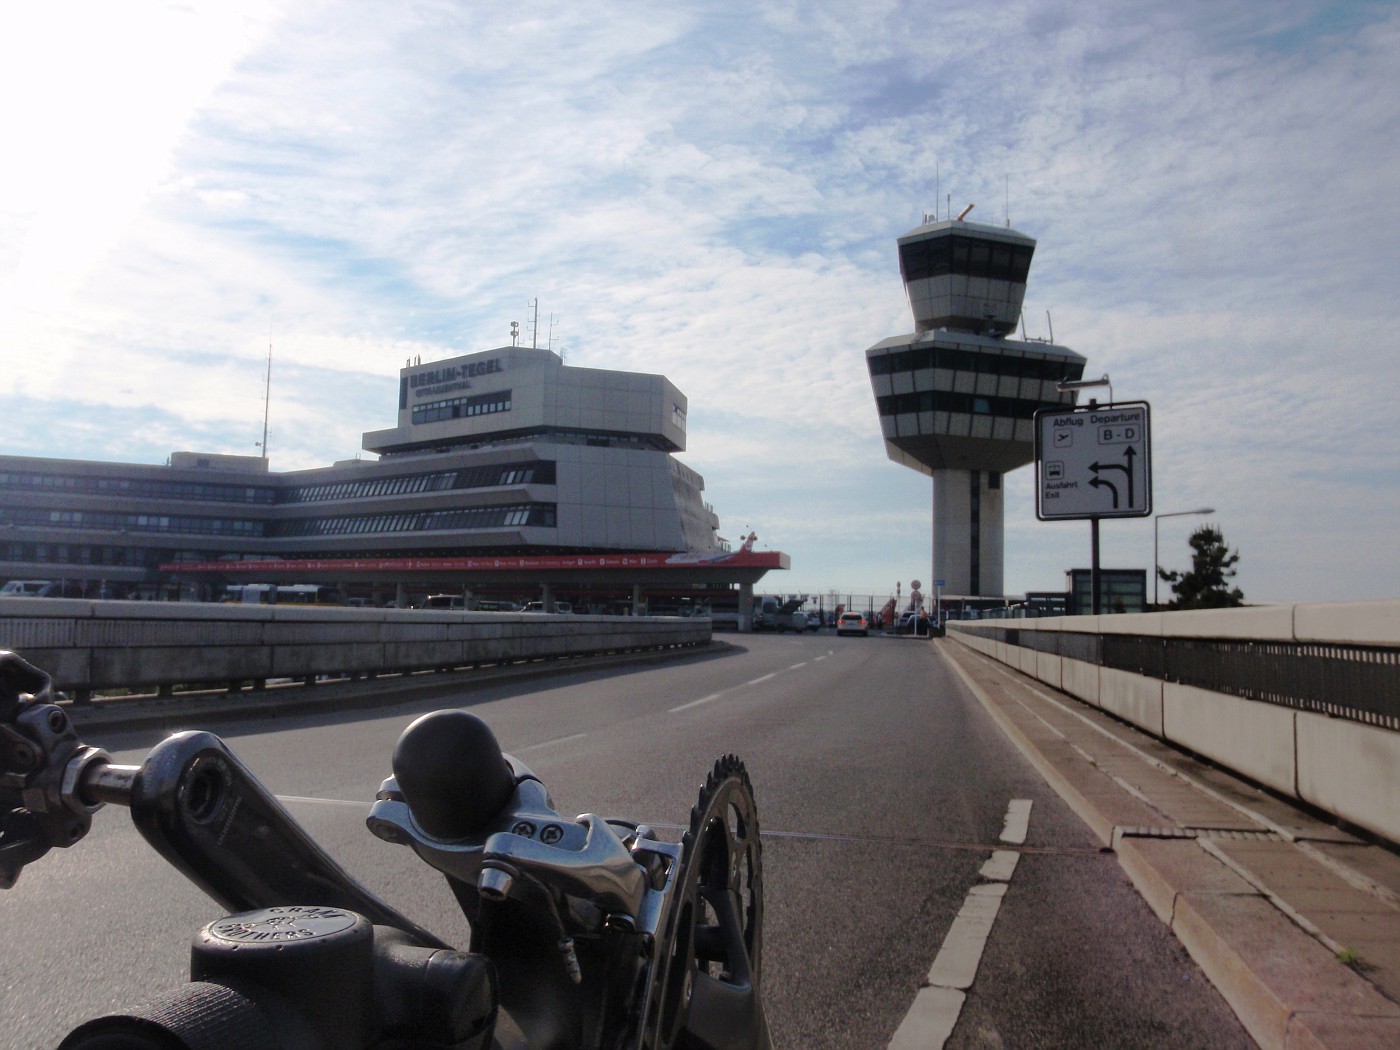 Arriving Airport Berlin-Tegel